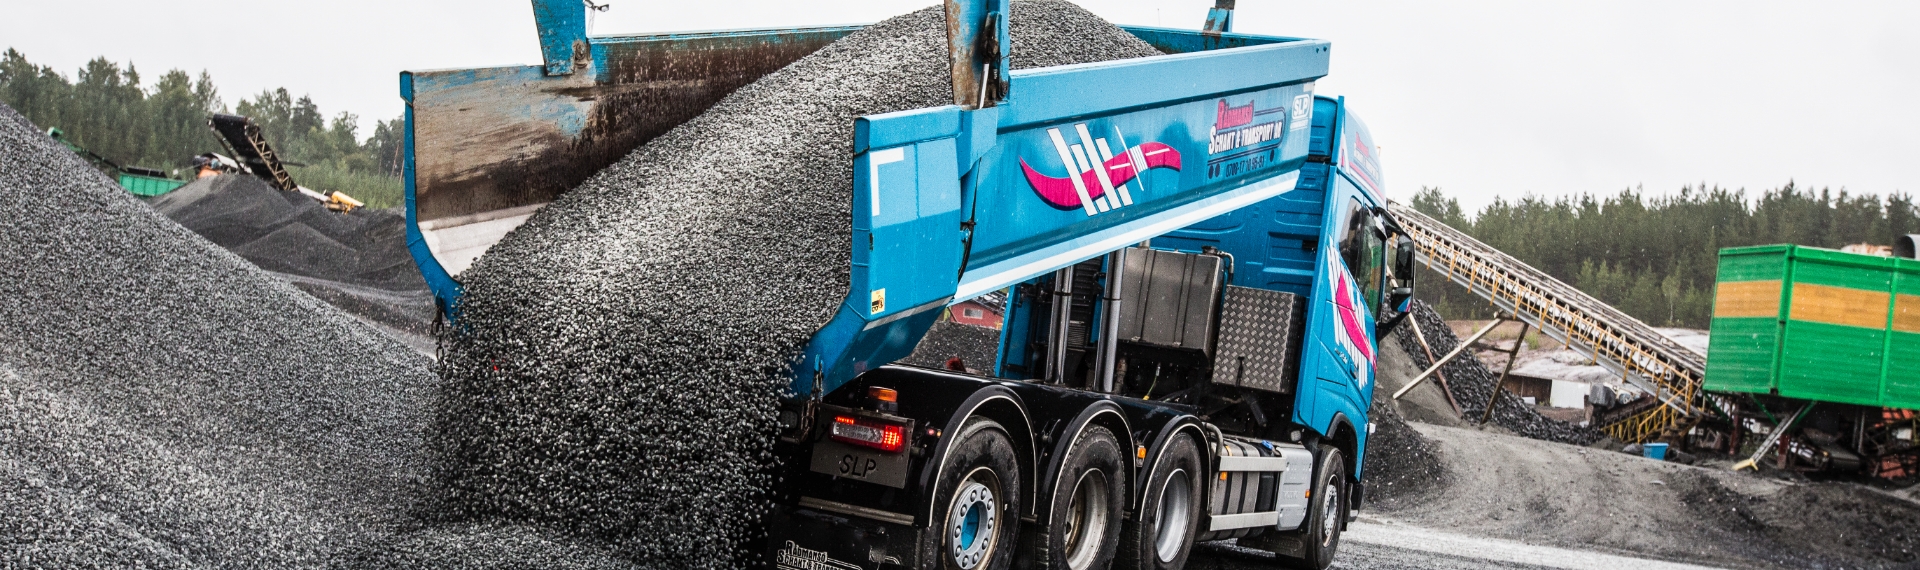 Um caminhão basculante com carroceria feita com o Hardox® 500 Tuf, que descarrega toneladas de rochas abrasivas.